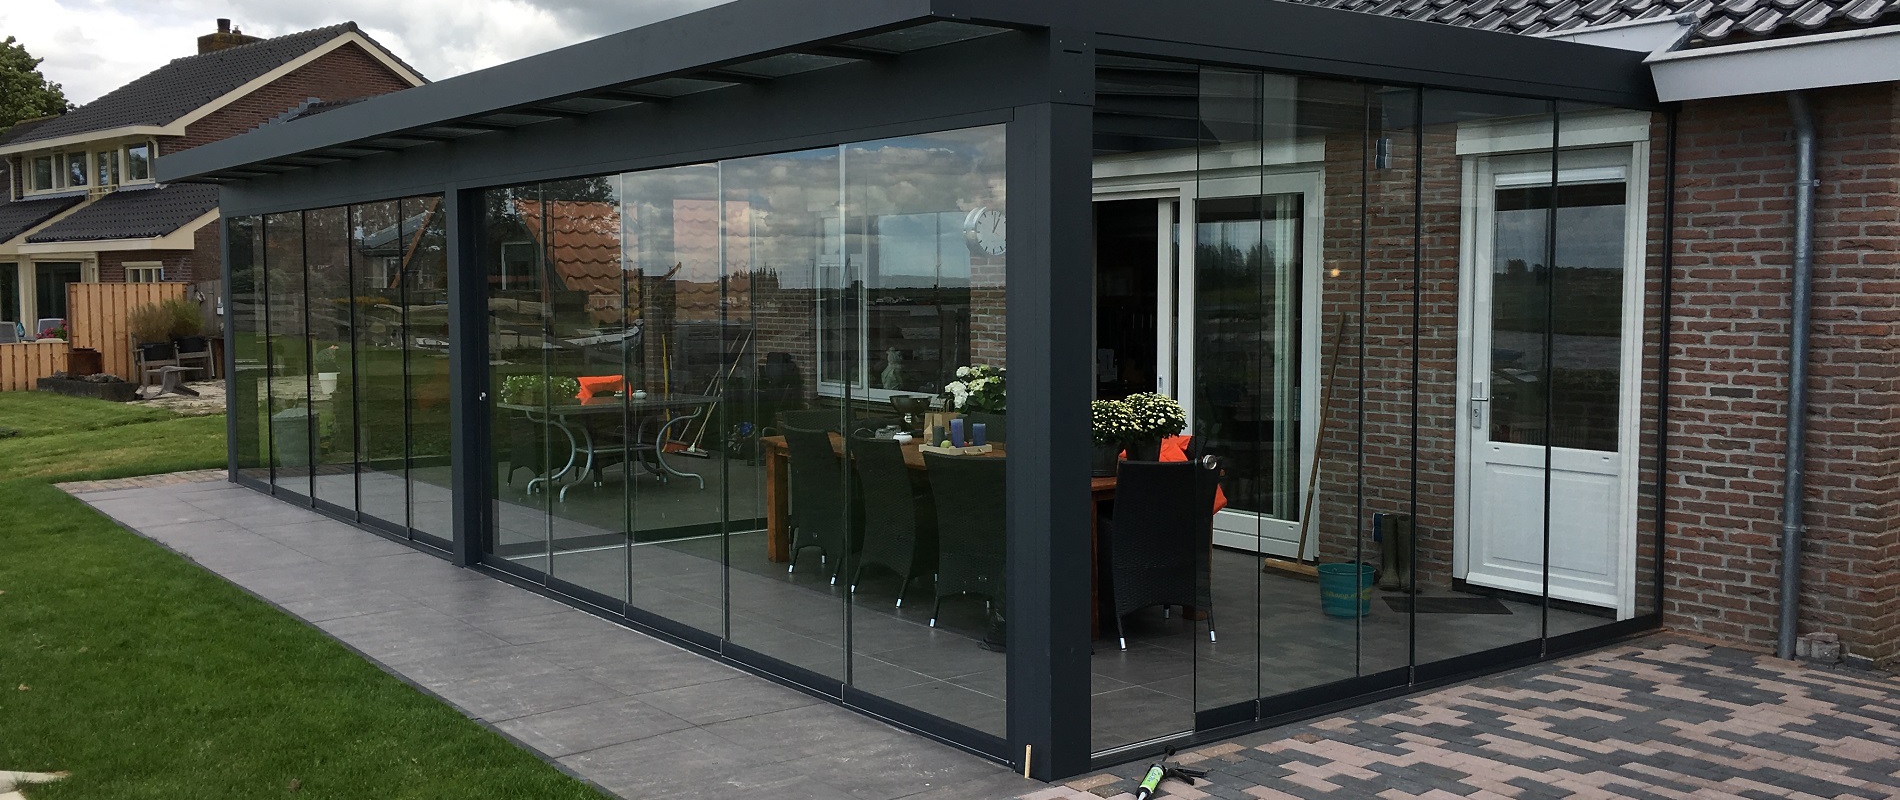 Een moderne tuinkamer met aluminium frame en glazen wanden, omringd door weelderige natuur en biedt een adembenemend uitzicht op de buitenwereld.